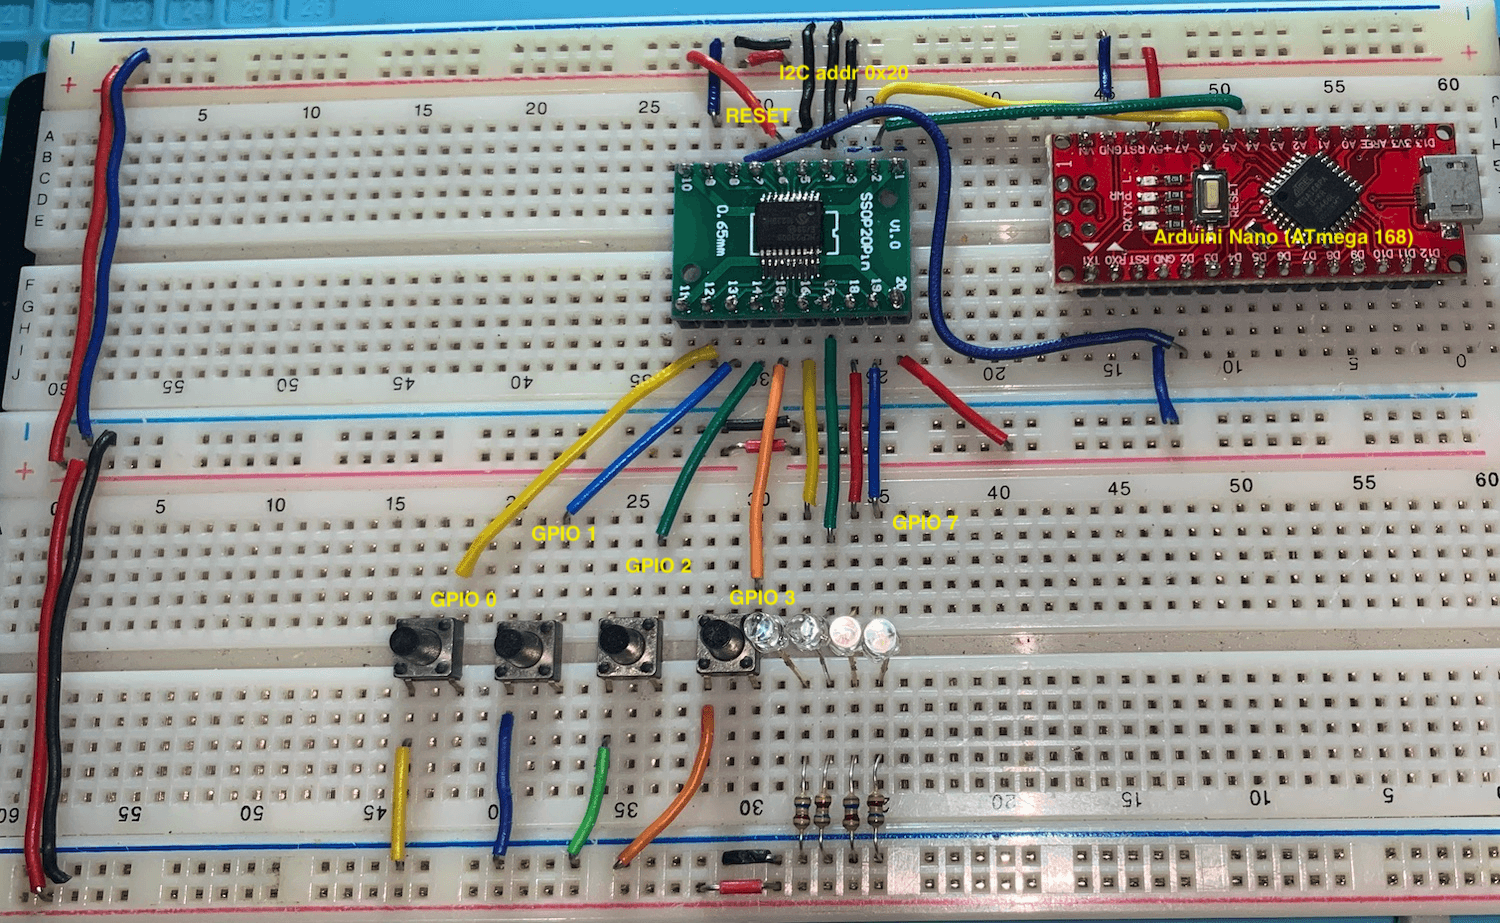 Basic prototype based on input / output schematic